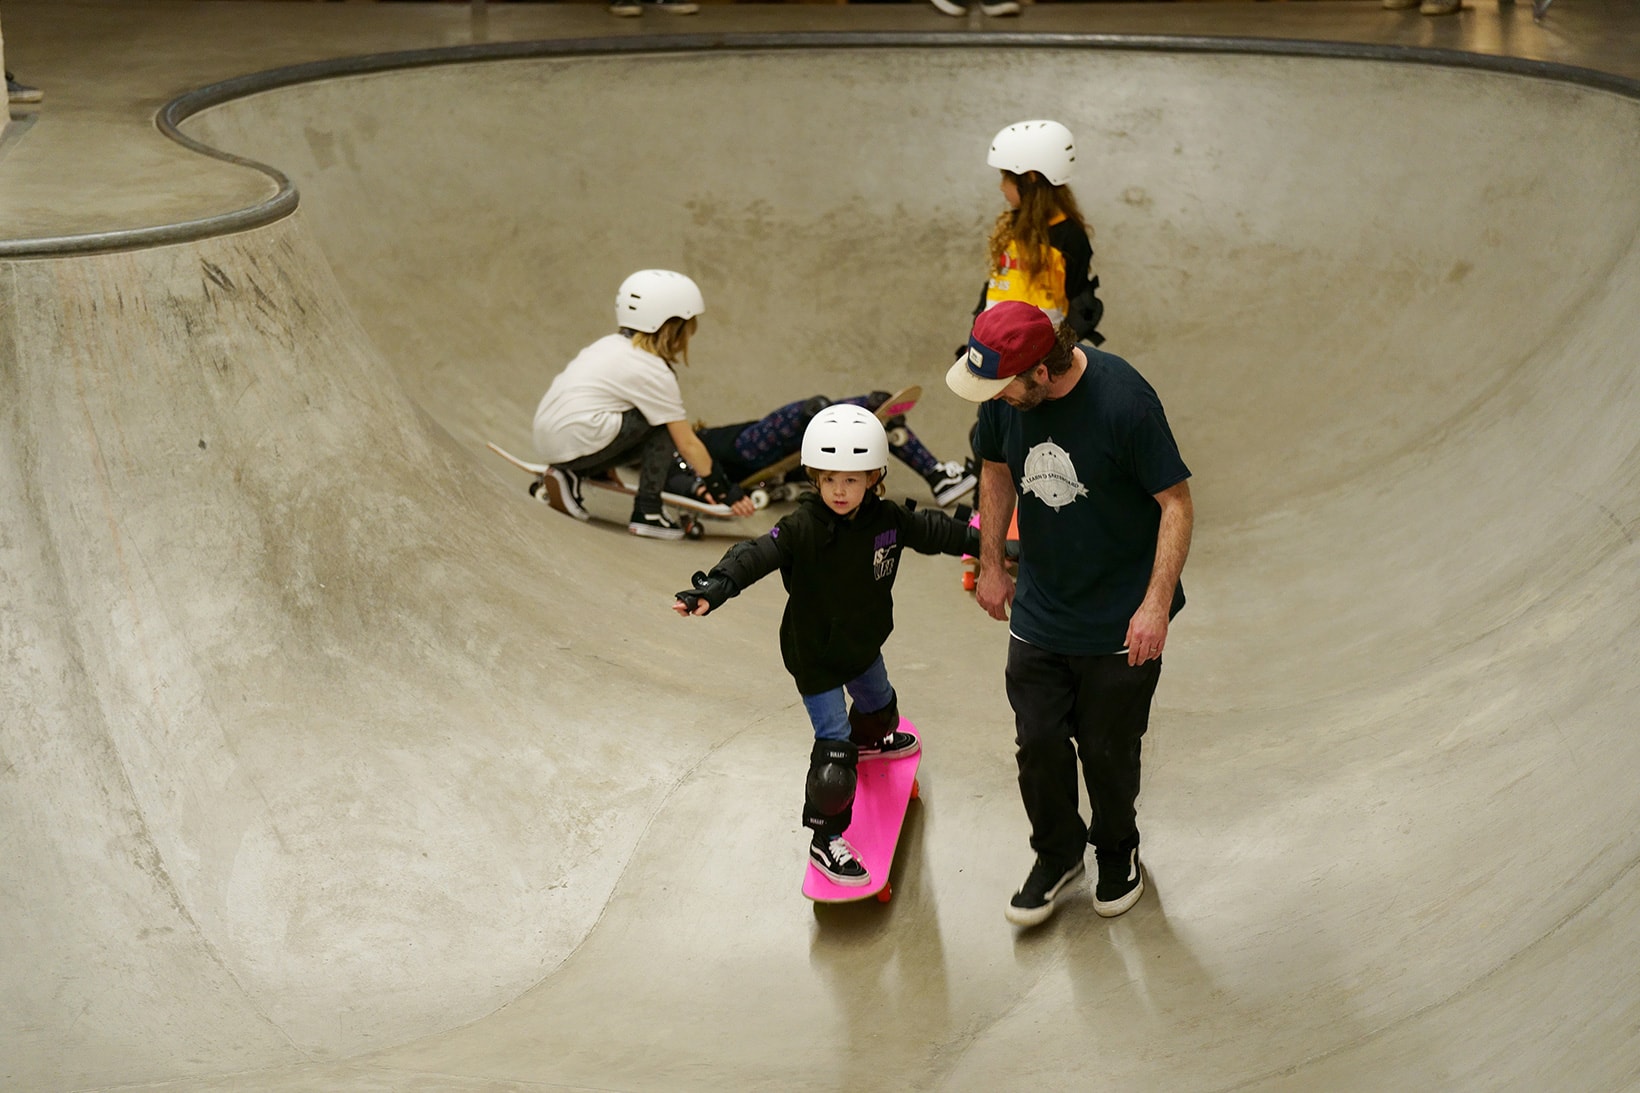 The Vans Girls Skate Workshop Inspired Females